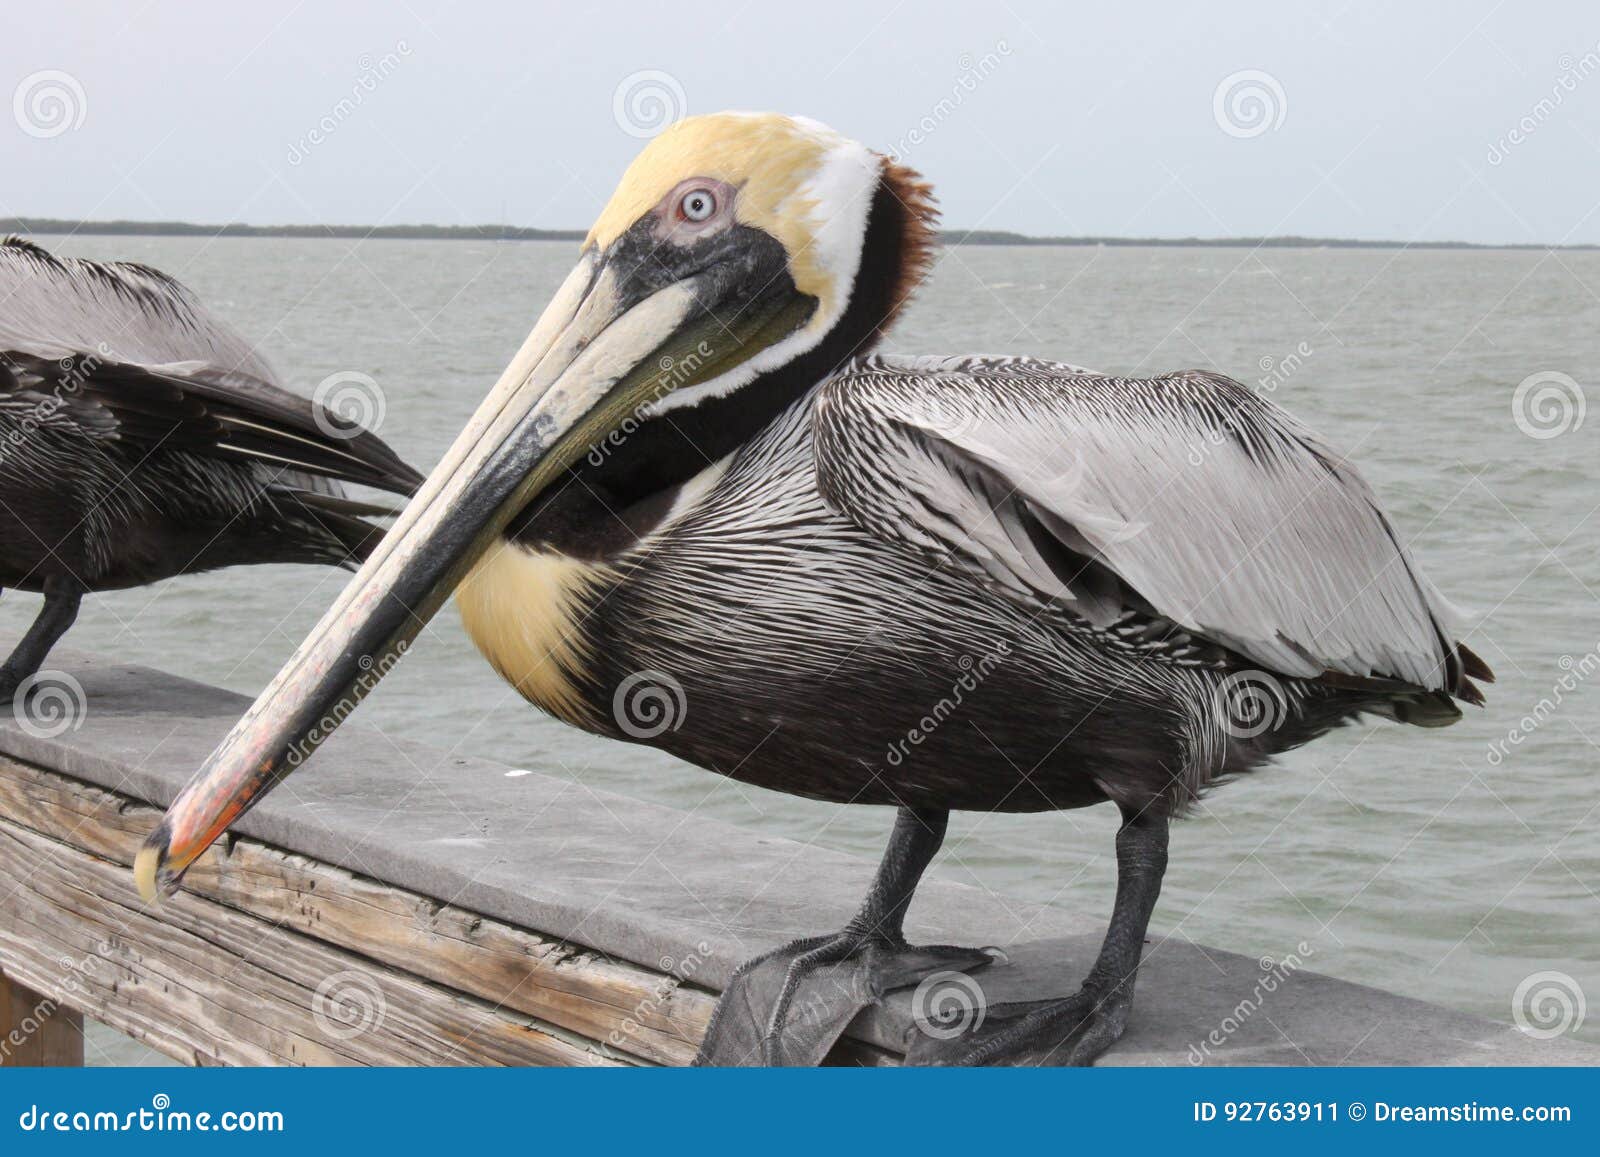 pelican, birds, natural habitat, florida birds, pier birds, muelle, puerto, bird